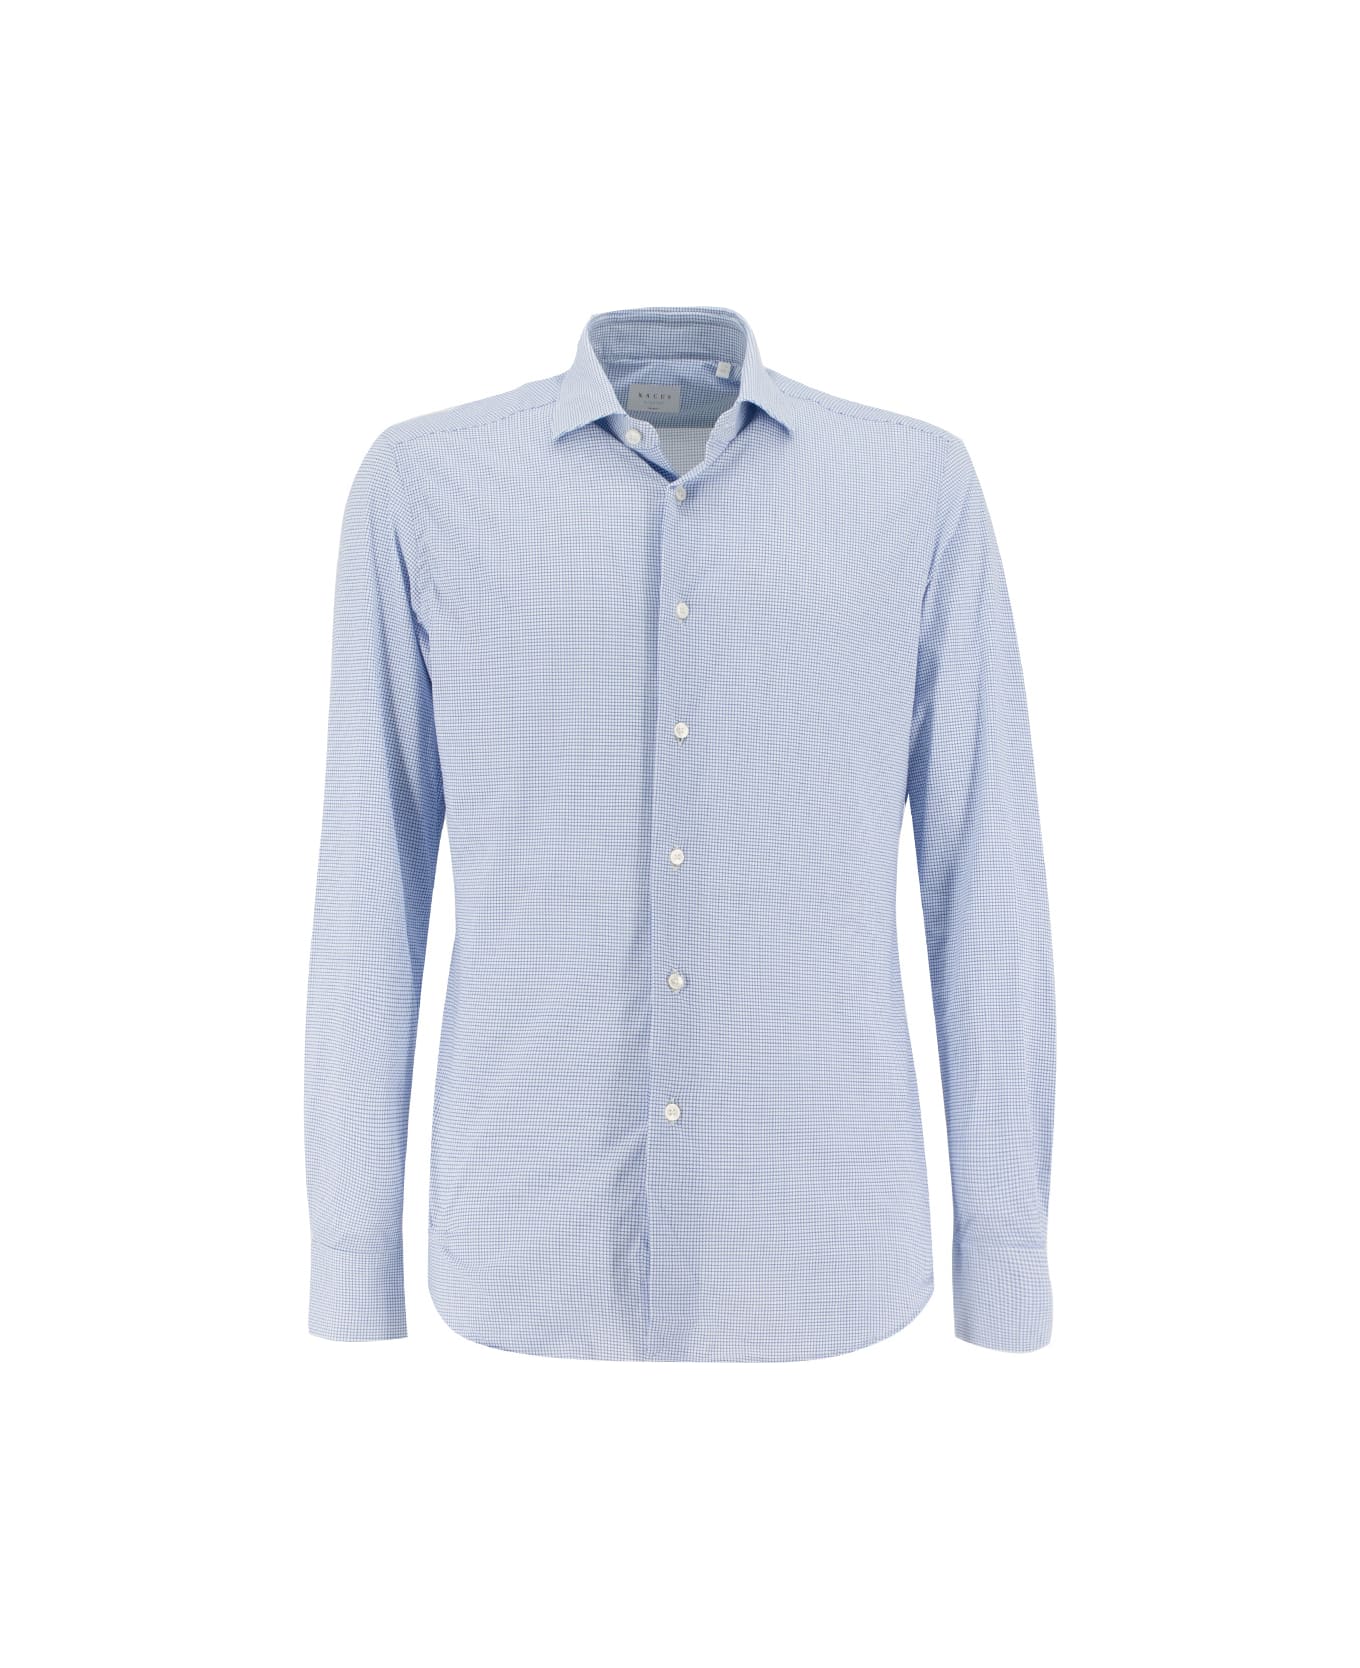 Xacus Shirt - WHITE  BLUE